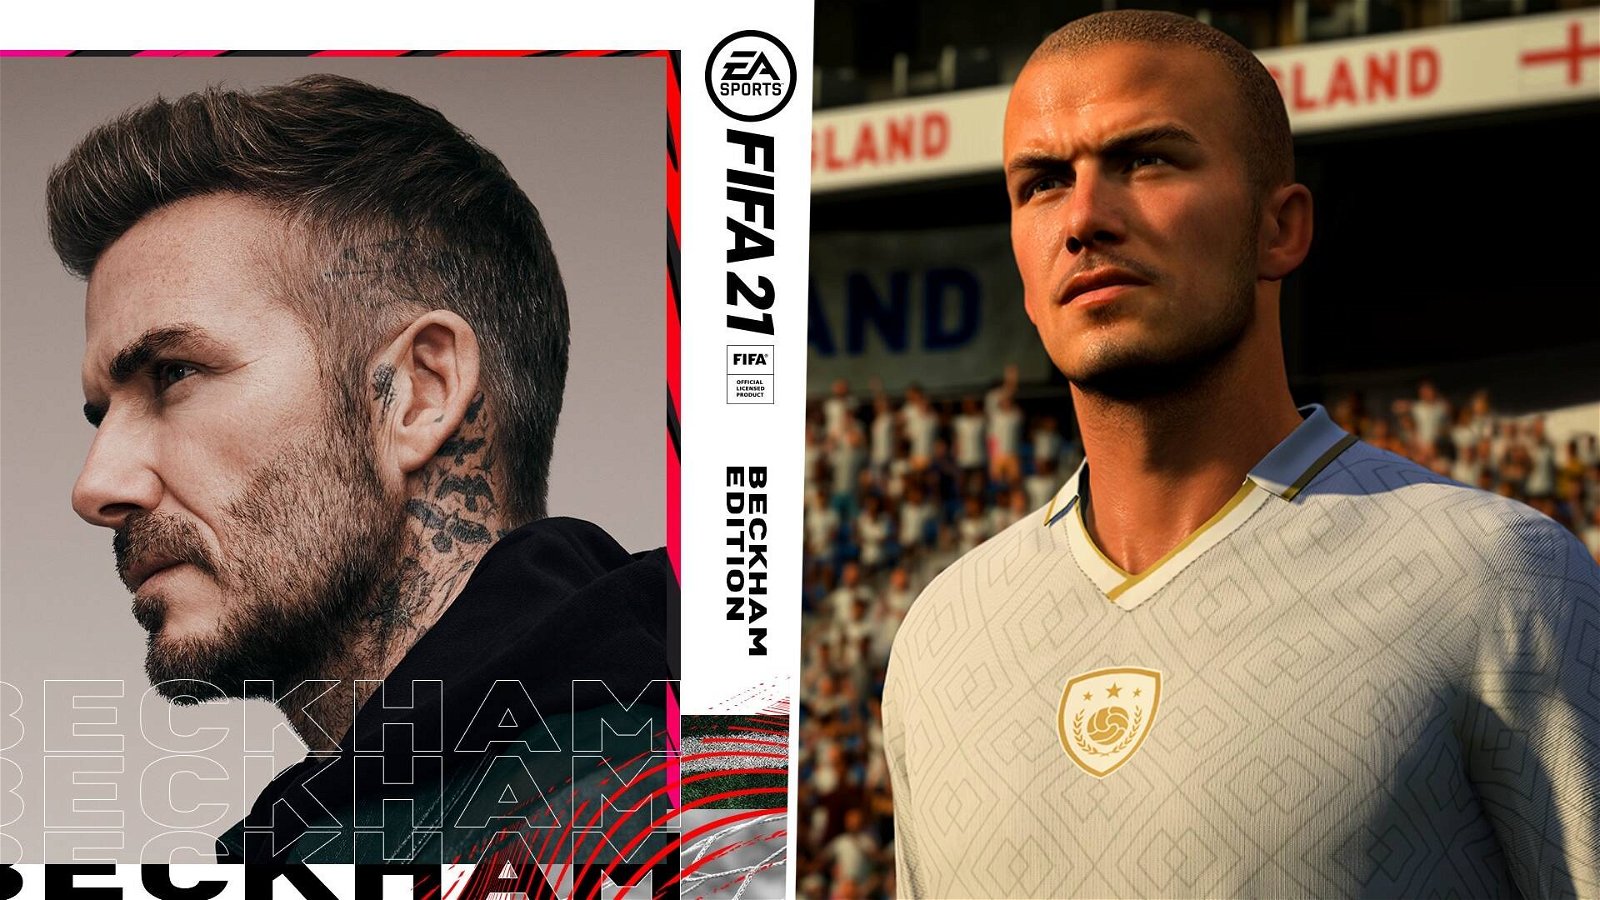 Immagine di FIFA 21: Beckham torna in FUT e Volta Football, ecco come averlo